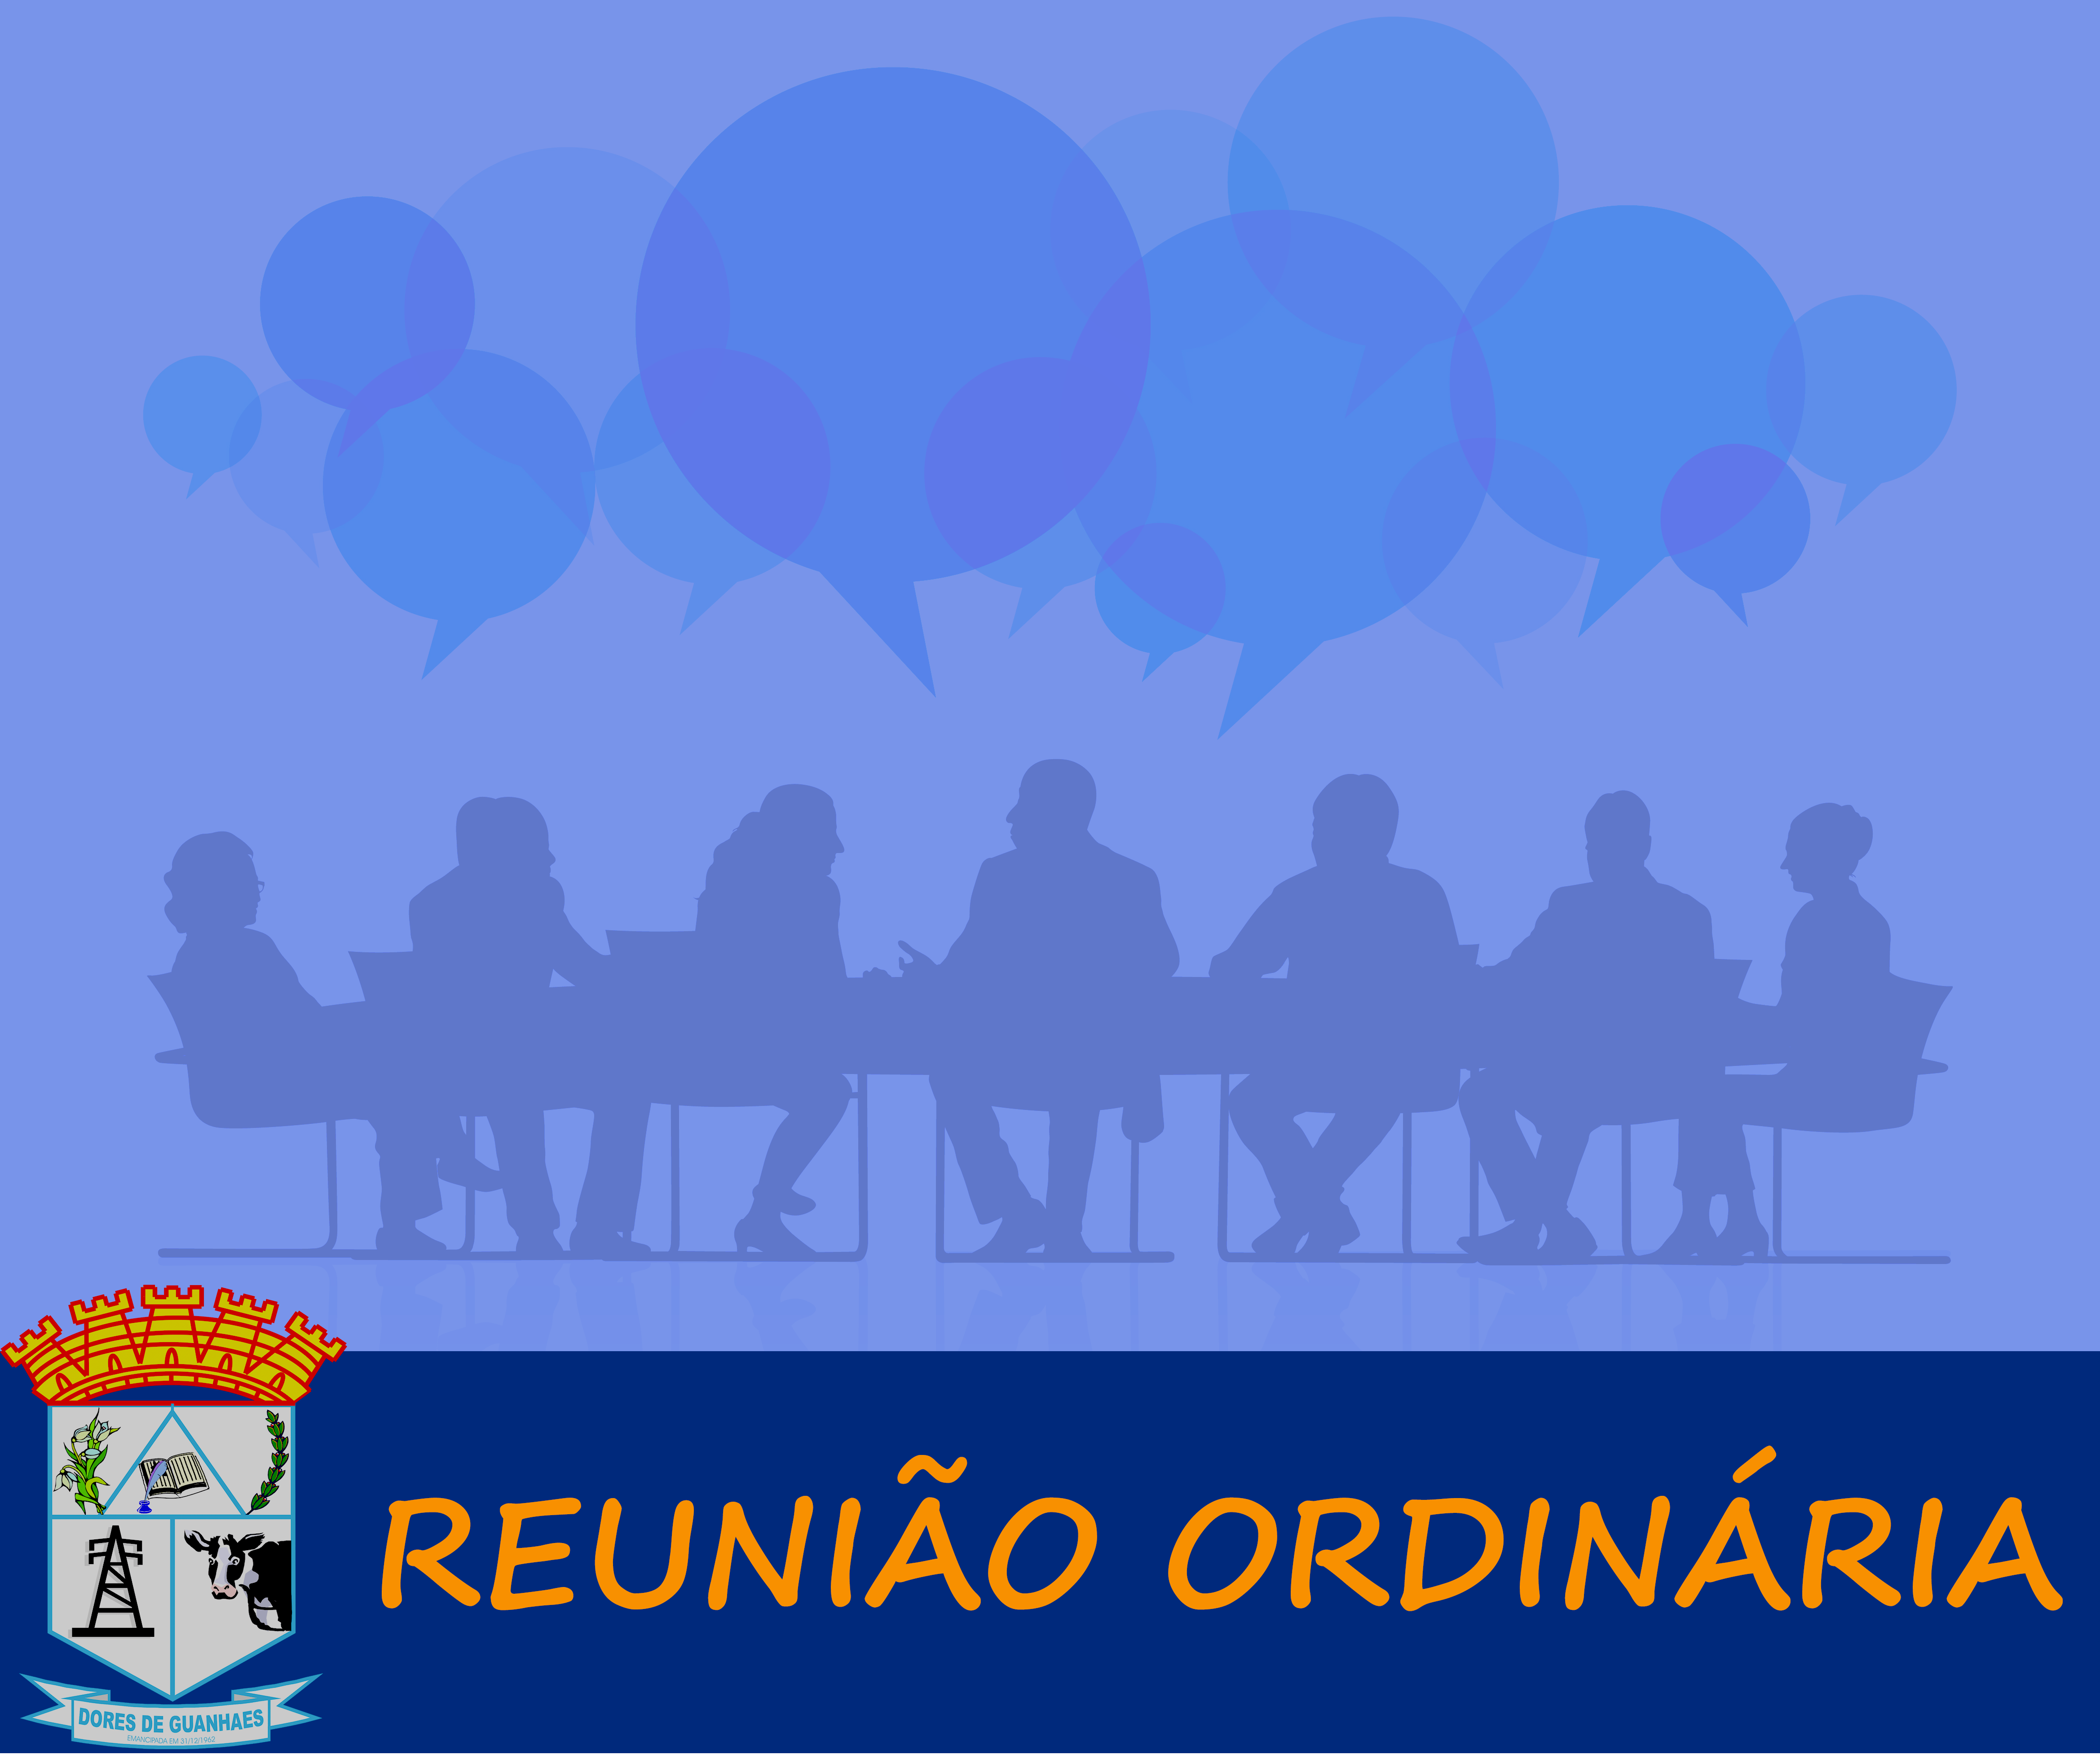 You are currently viewing Reunião Ordinária Nº 01 de 15 de fevereiro 2021